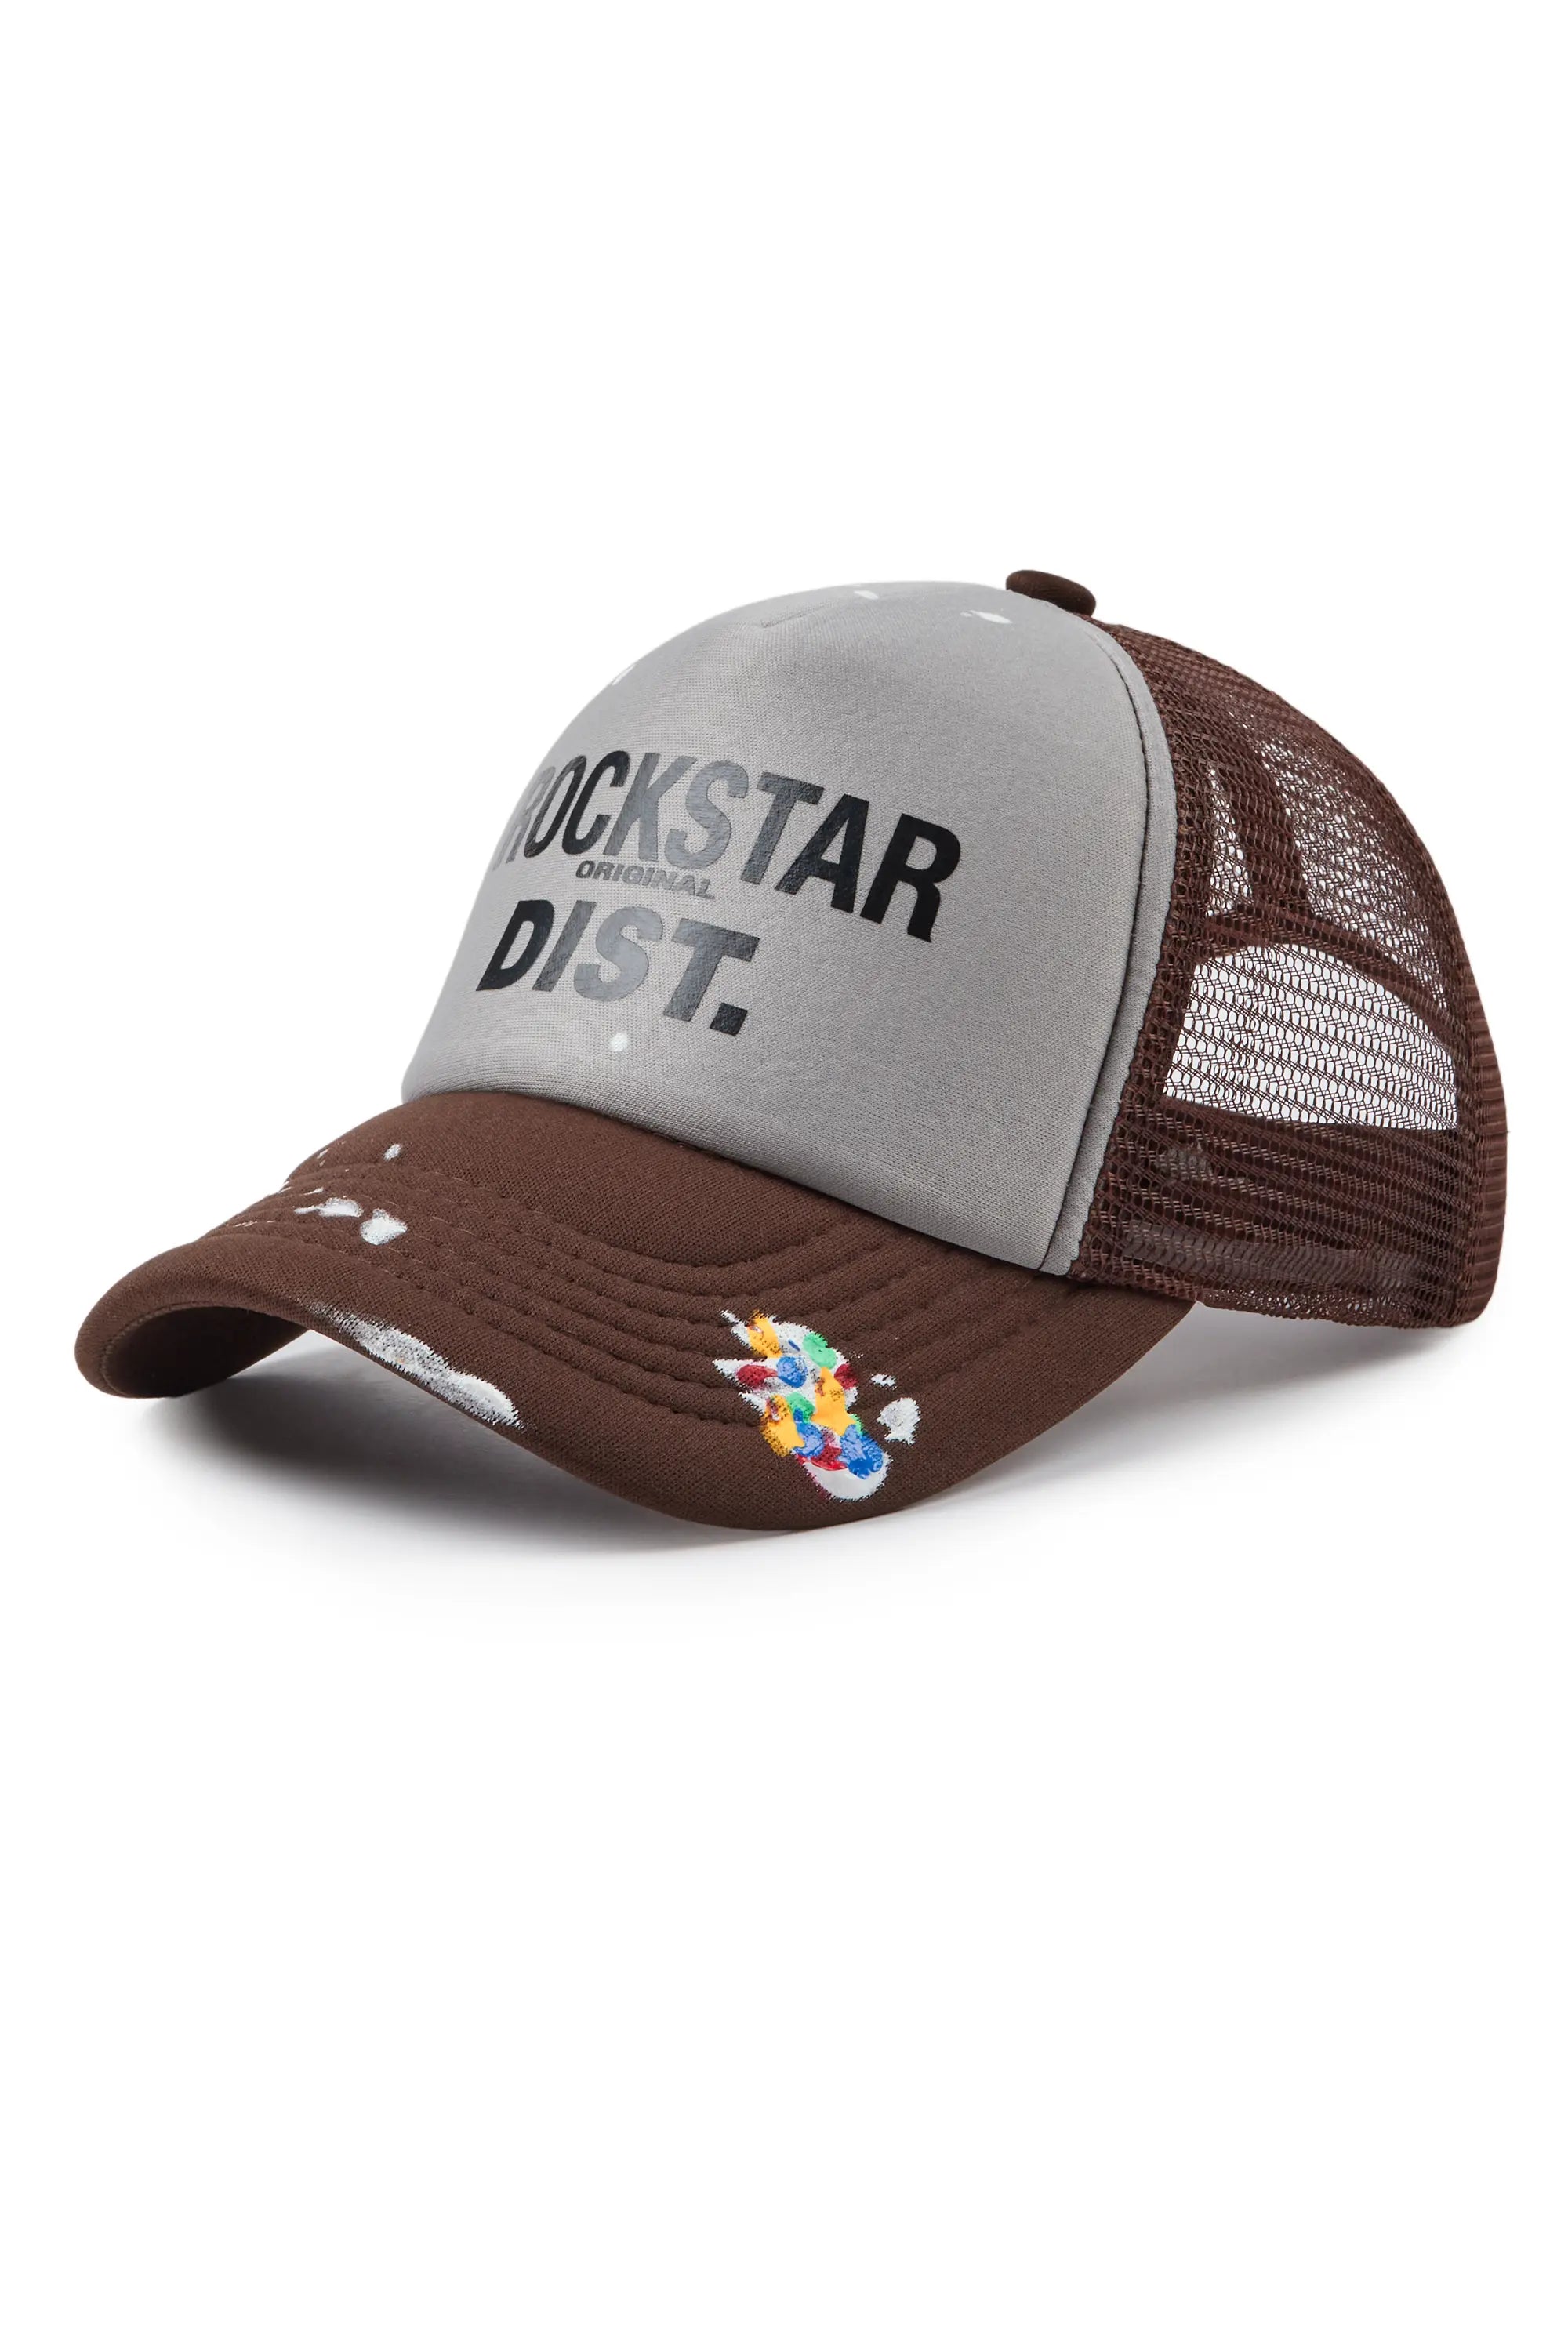 Neptune Grey/Brown Trucker Hat